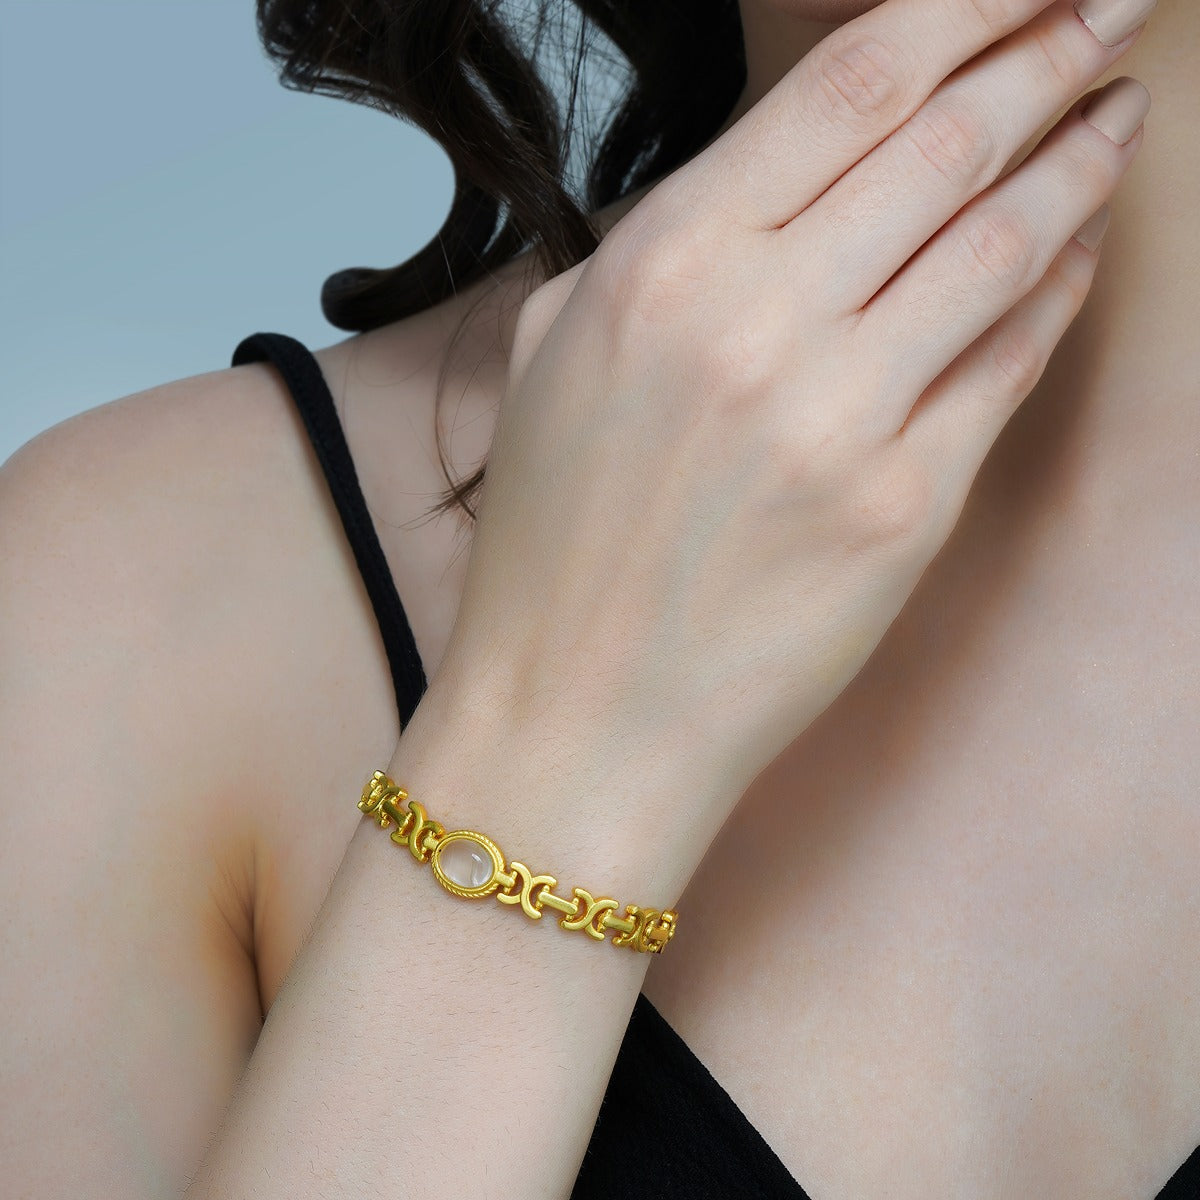 Buy Sasha Bracelet Online at Low Prices in India | Amazon Jewellery Store -  Amazon.in